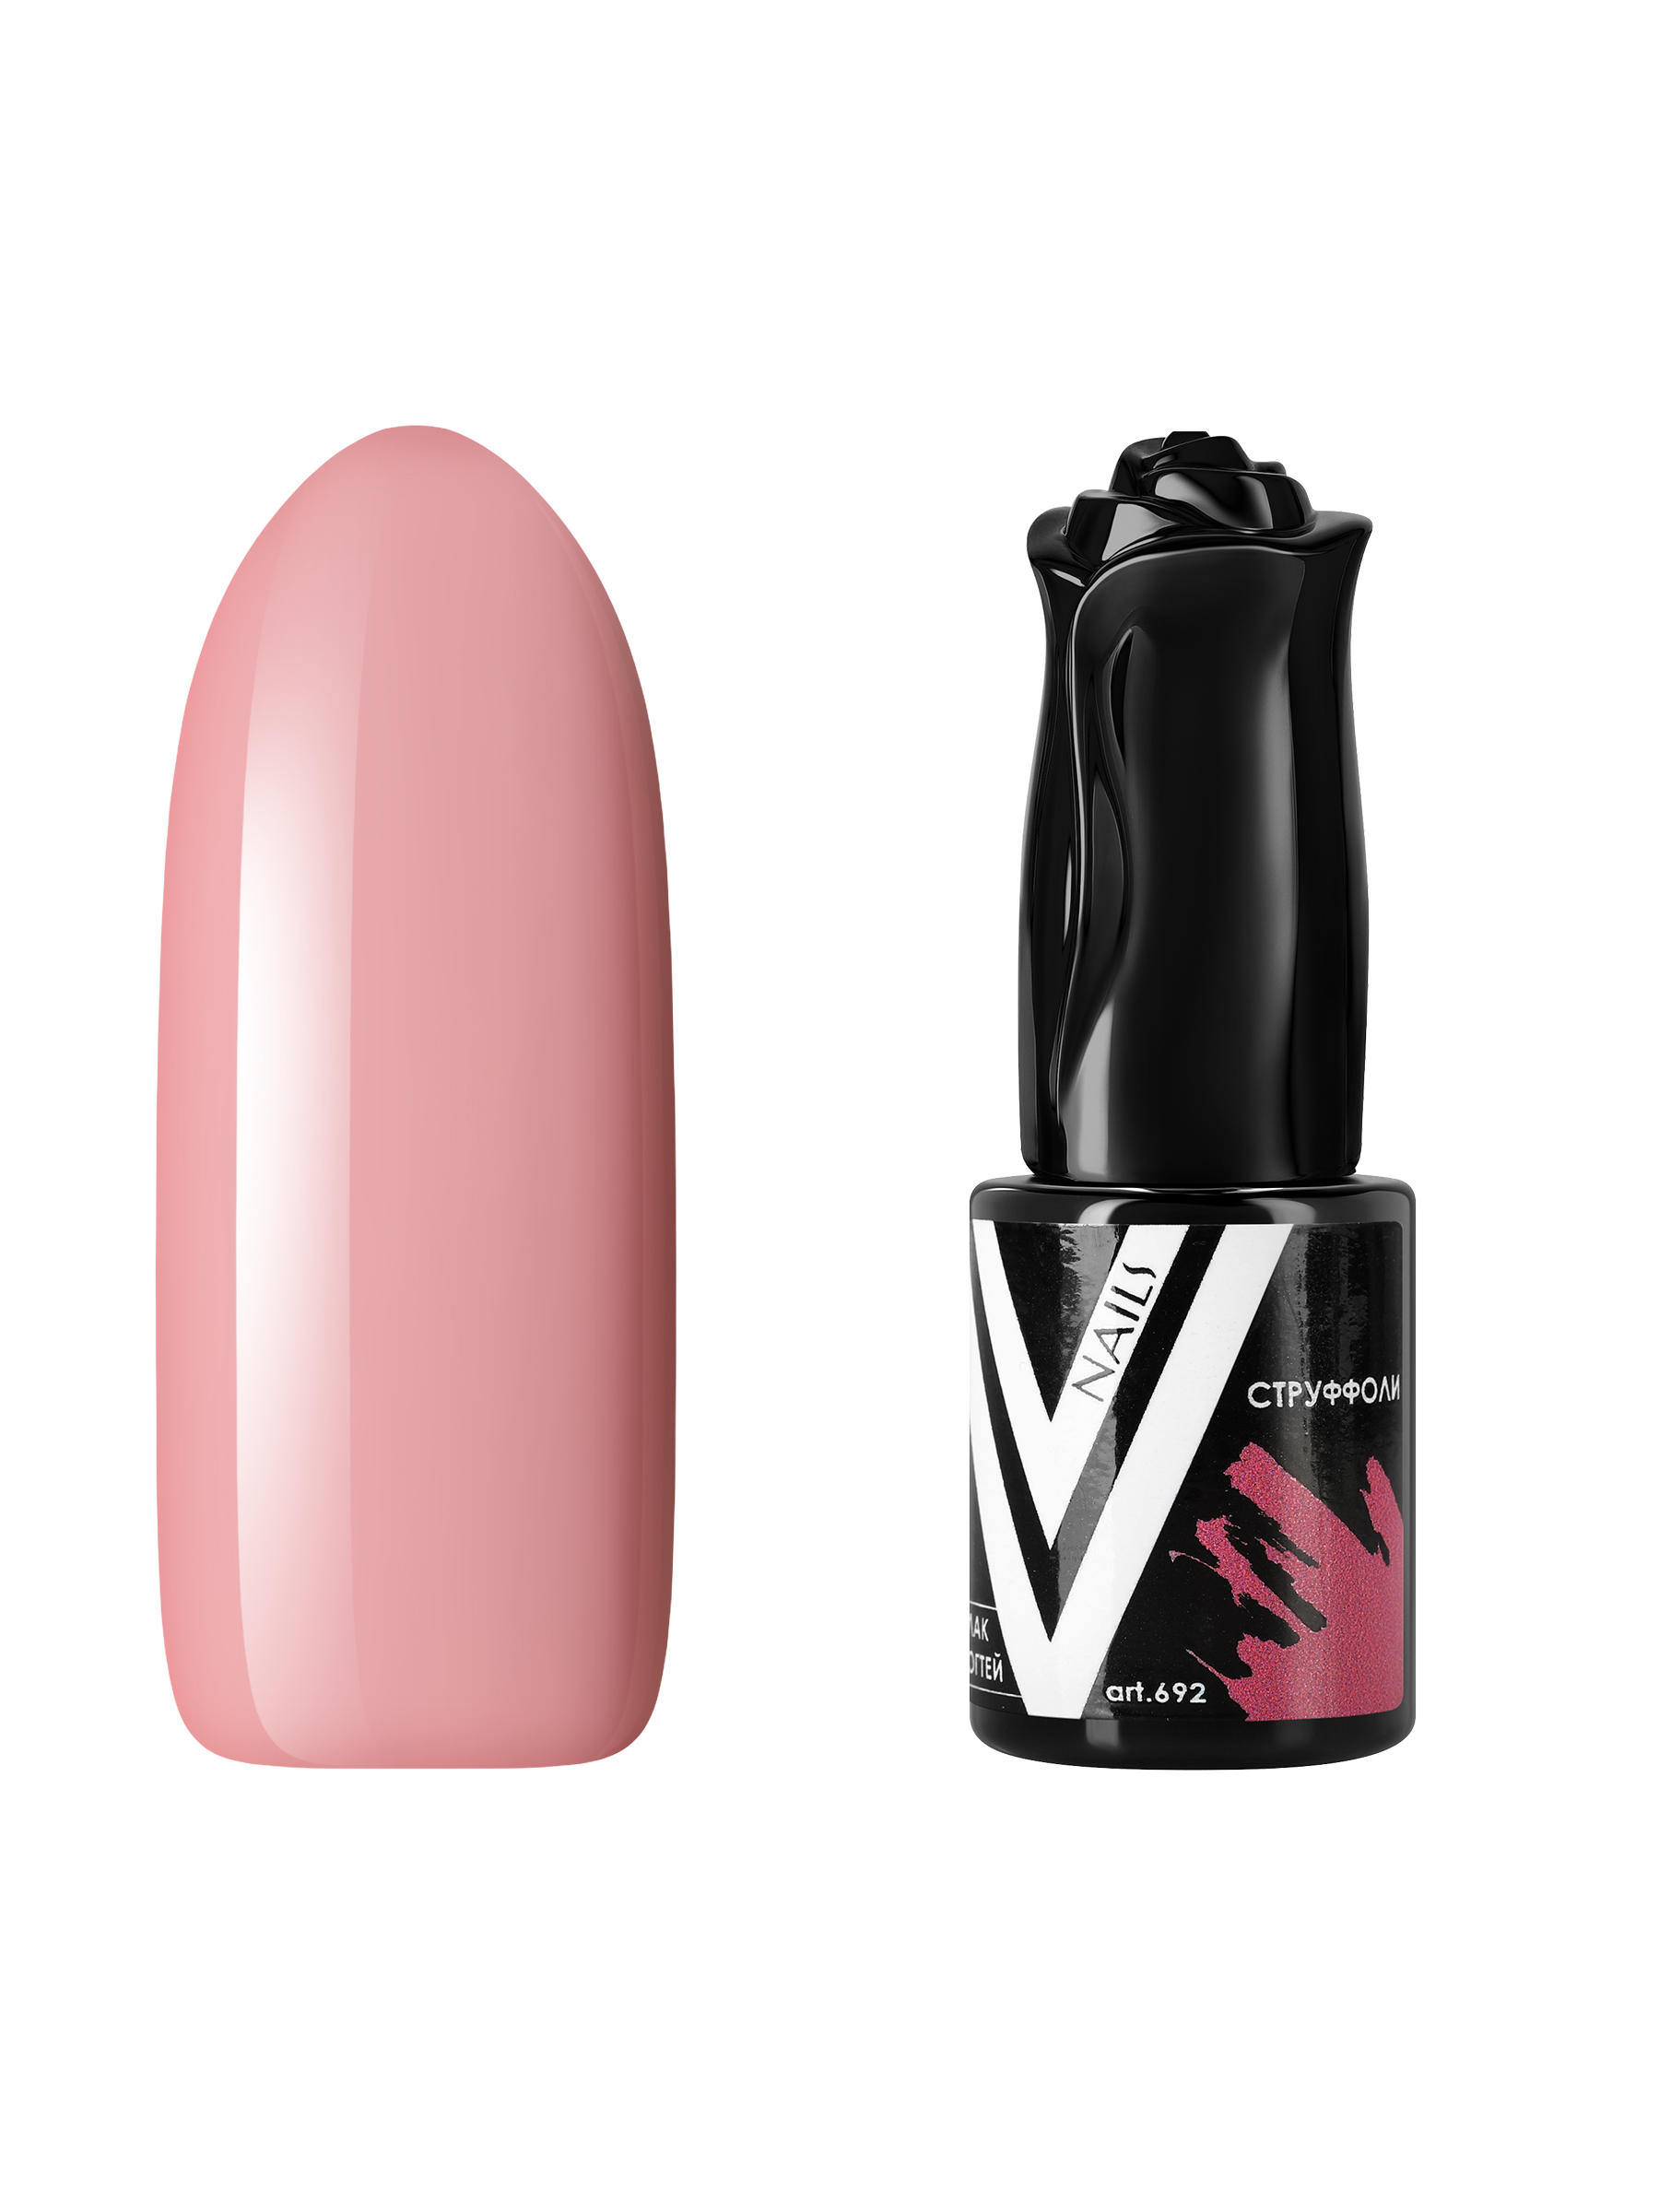 Гель-лак для ногтей Vogue Nails пыльный пастельный приглушенный, розовый бежевый, 10 мл пудра для лица myg тон натуральный светло бежевый компактная фиксирующая матирующая 8гр